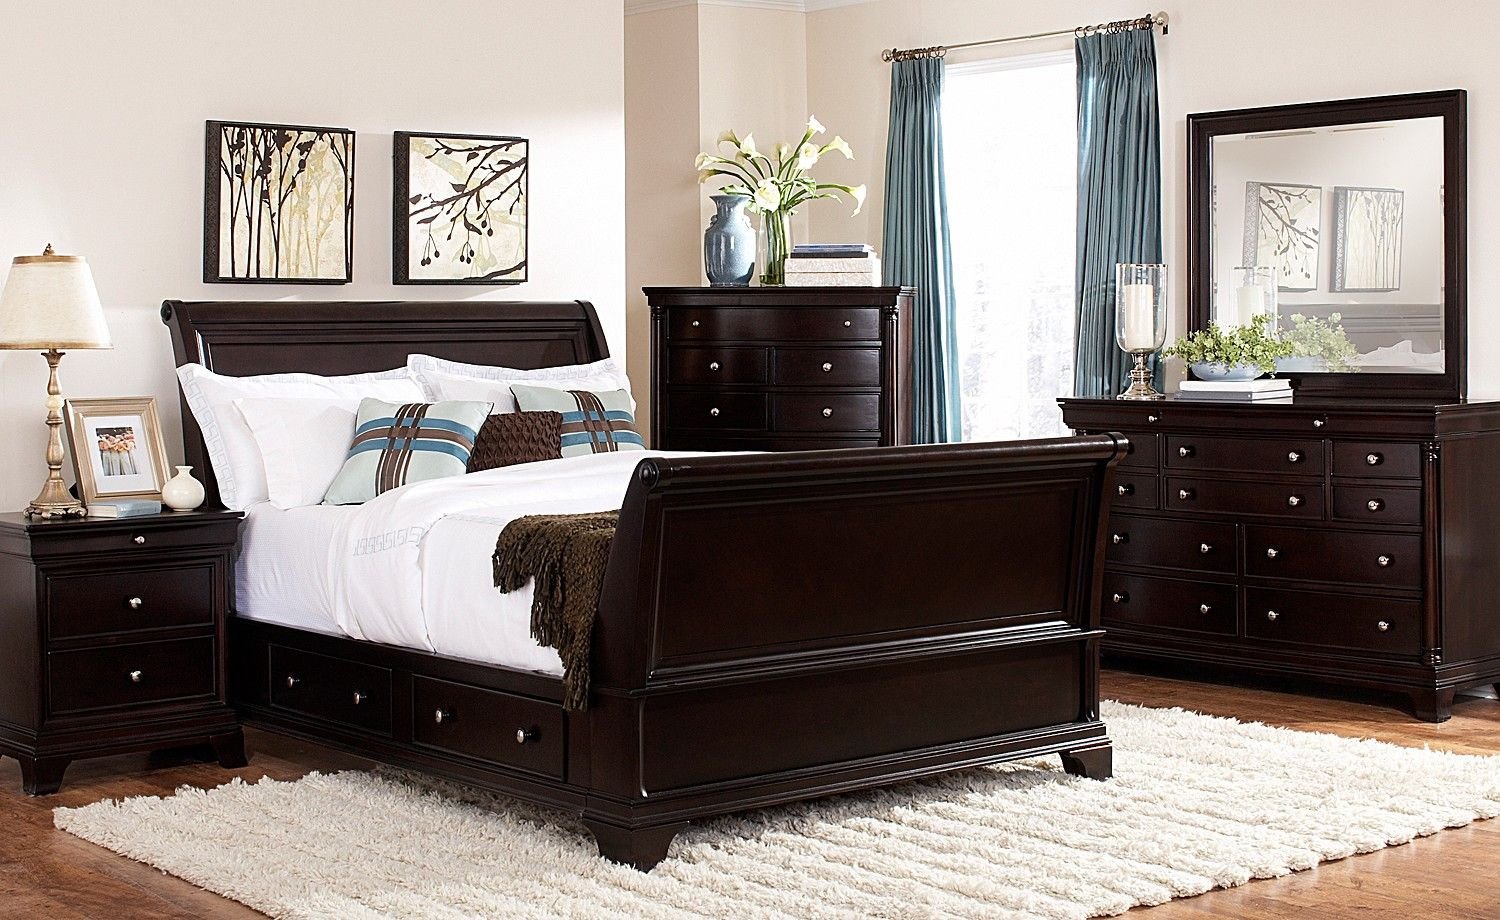 Full Size Bedroom Suite Inspirational Lakeshore Bedroom 7 Pc Queen Storage Bedroom Furniture